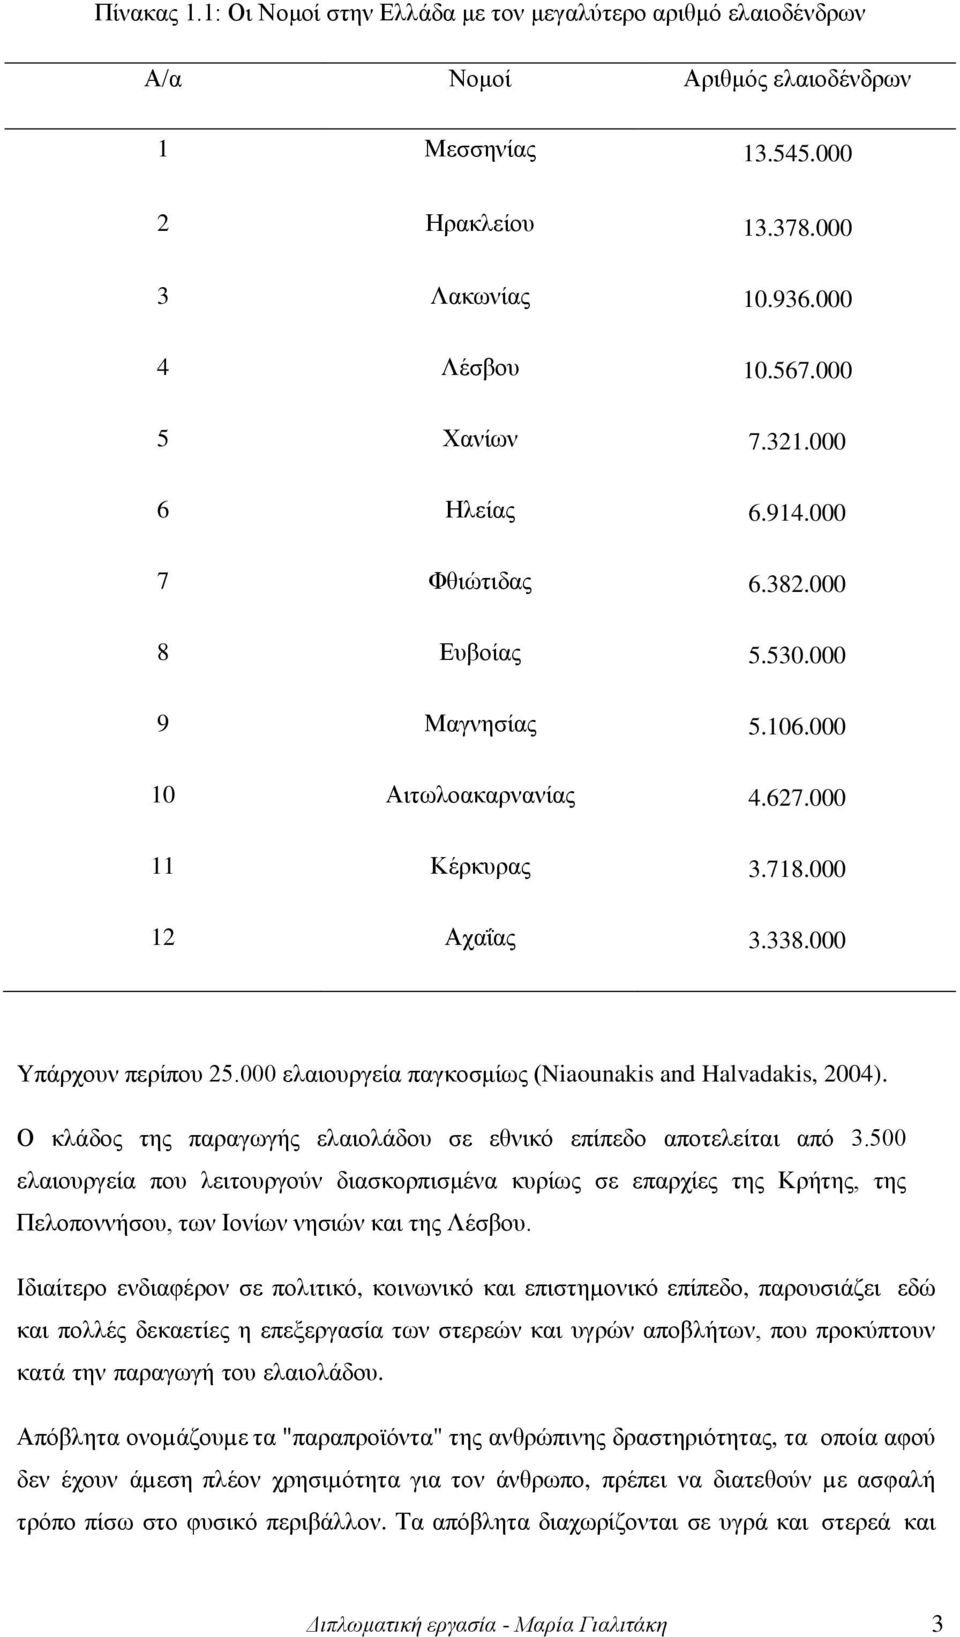 000 ελαιουργεία παγκοσμίως (Niaounakis and Halvadakis, 2004). Ο κλάδος της παραγωγής ελαιολάδου σε εθνικό επίπεδο αποτελείται από 3.